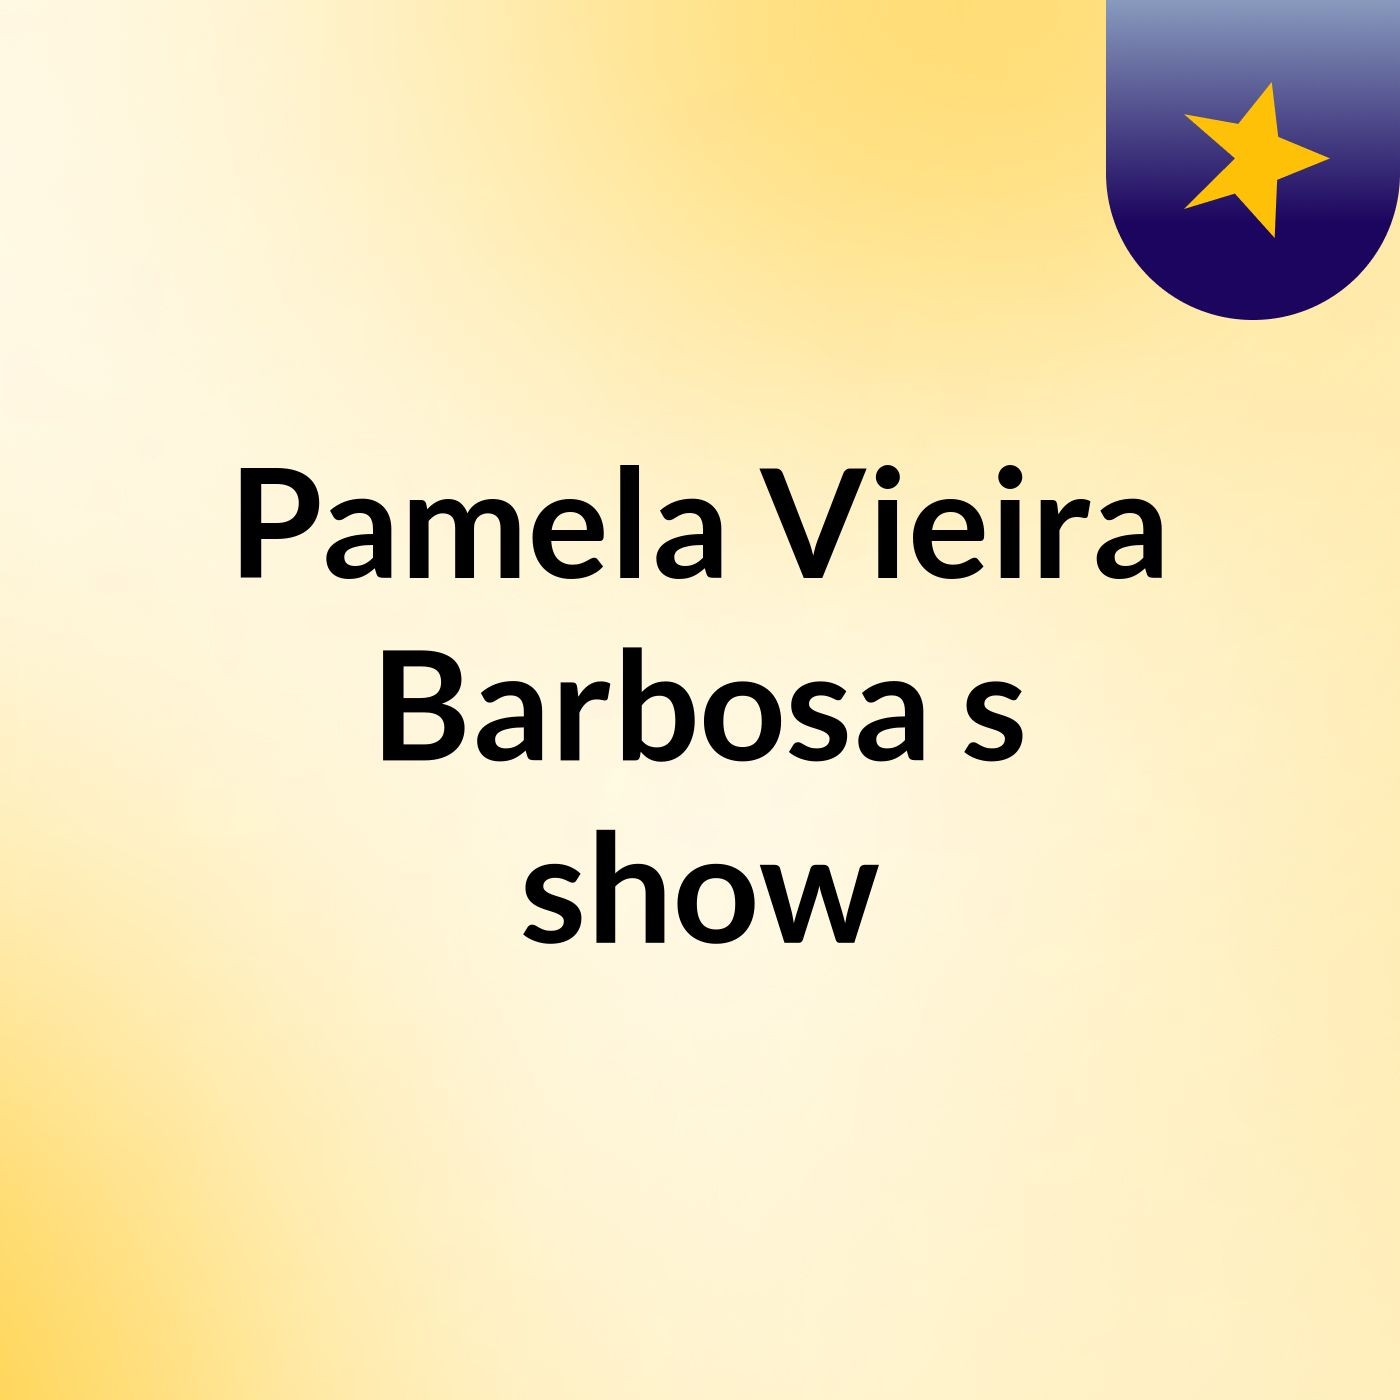 Pamela Vieira Barbosa's show